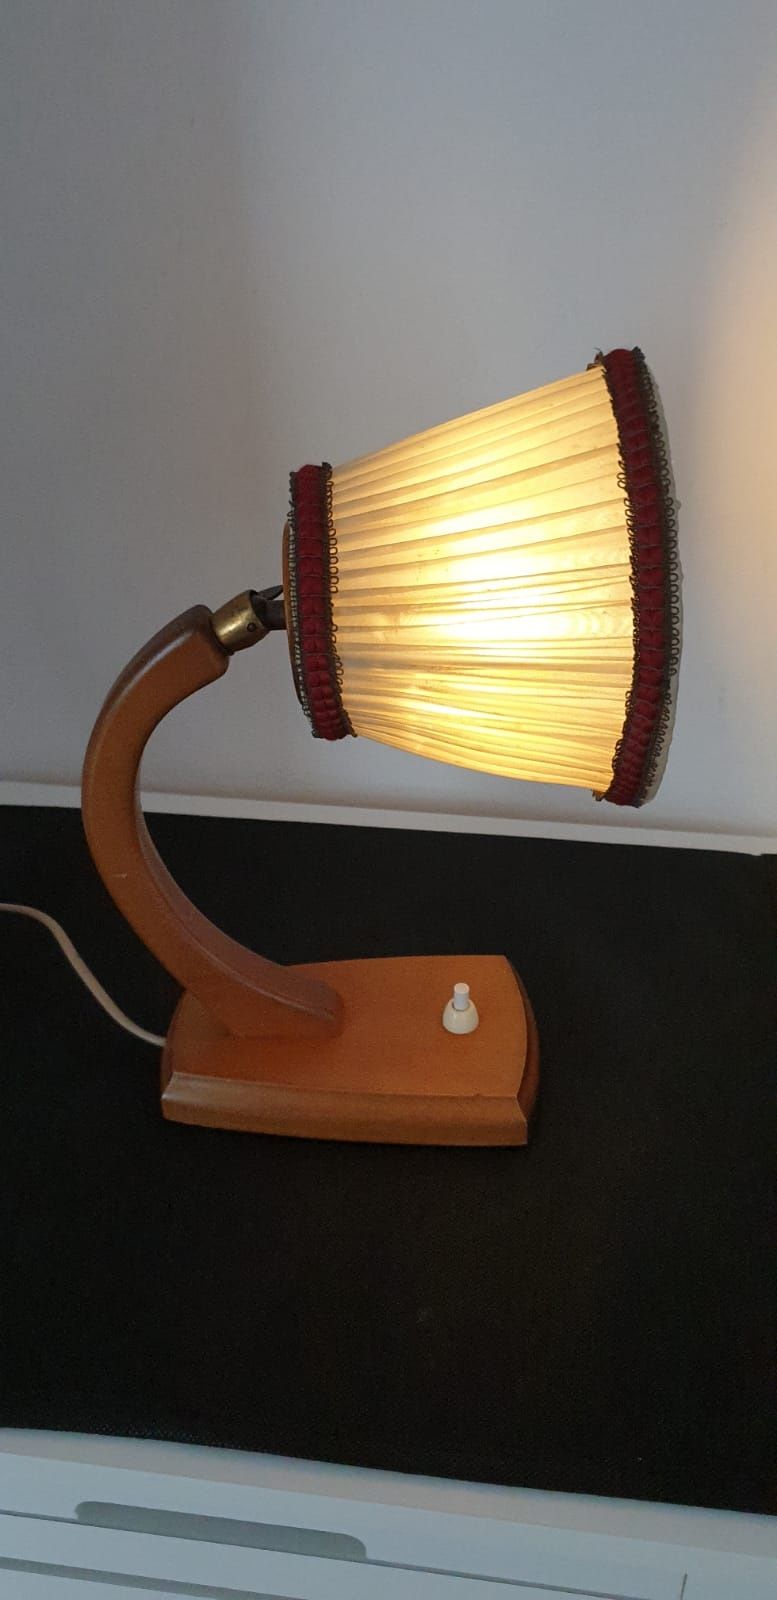 Lampa veioza vintage colectie lemn masiv Suedia 1950 Bauhaus